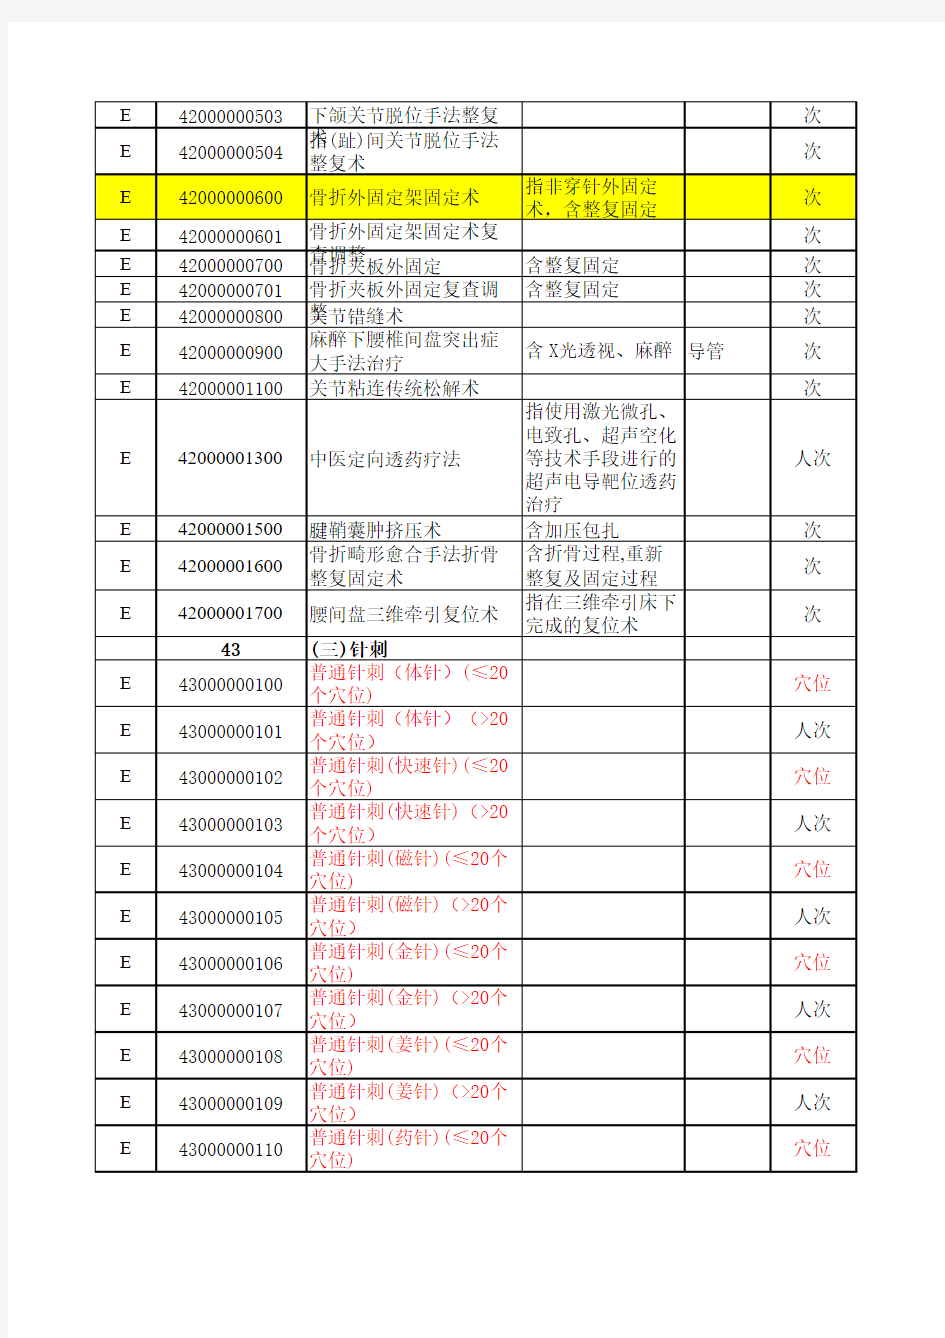 浙江收费目录-2012年9月基本医疗服务价格电子版(5990项)(20120901)